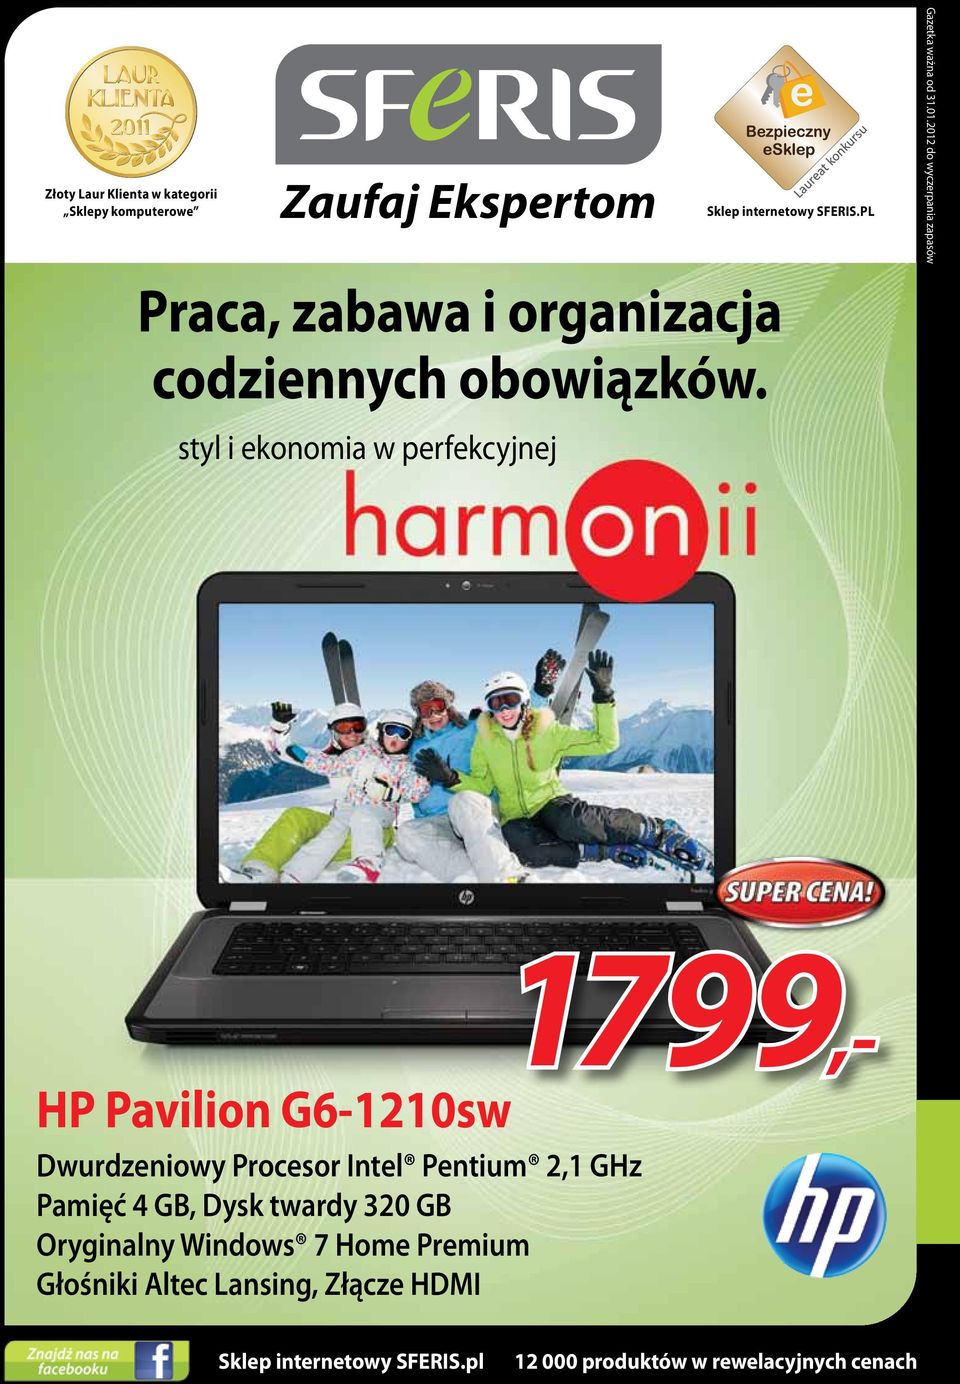 2012 do wyczerpania zapasów 1799,- HP Pavilion G6-1210sw Dwurdzeniowy Procesor Intel Pentium 2,1 GHz Pamięć 4 GB,